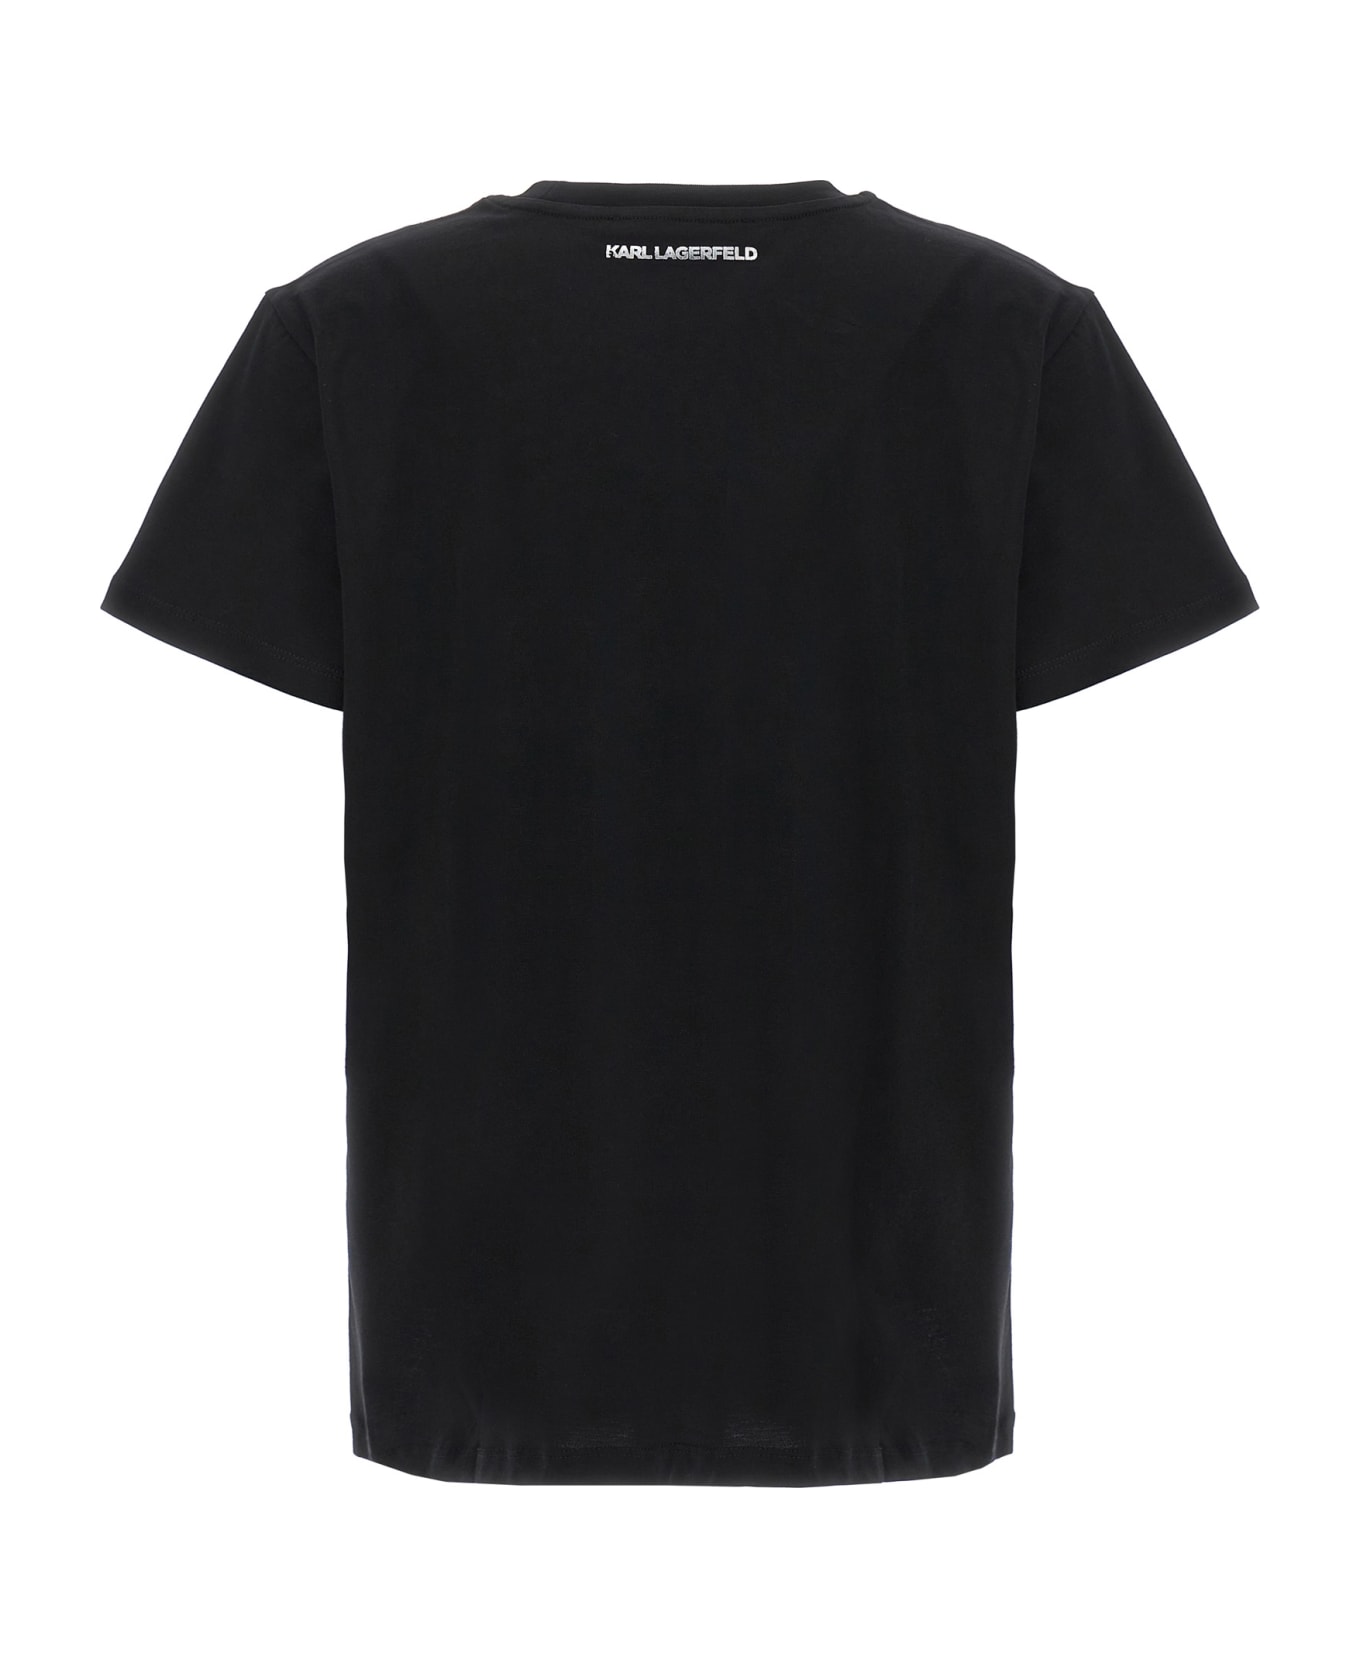 Karl Lagerfeld 'ikonik 2,0 Glitter' T-shirt - Black   Tシャツ